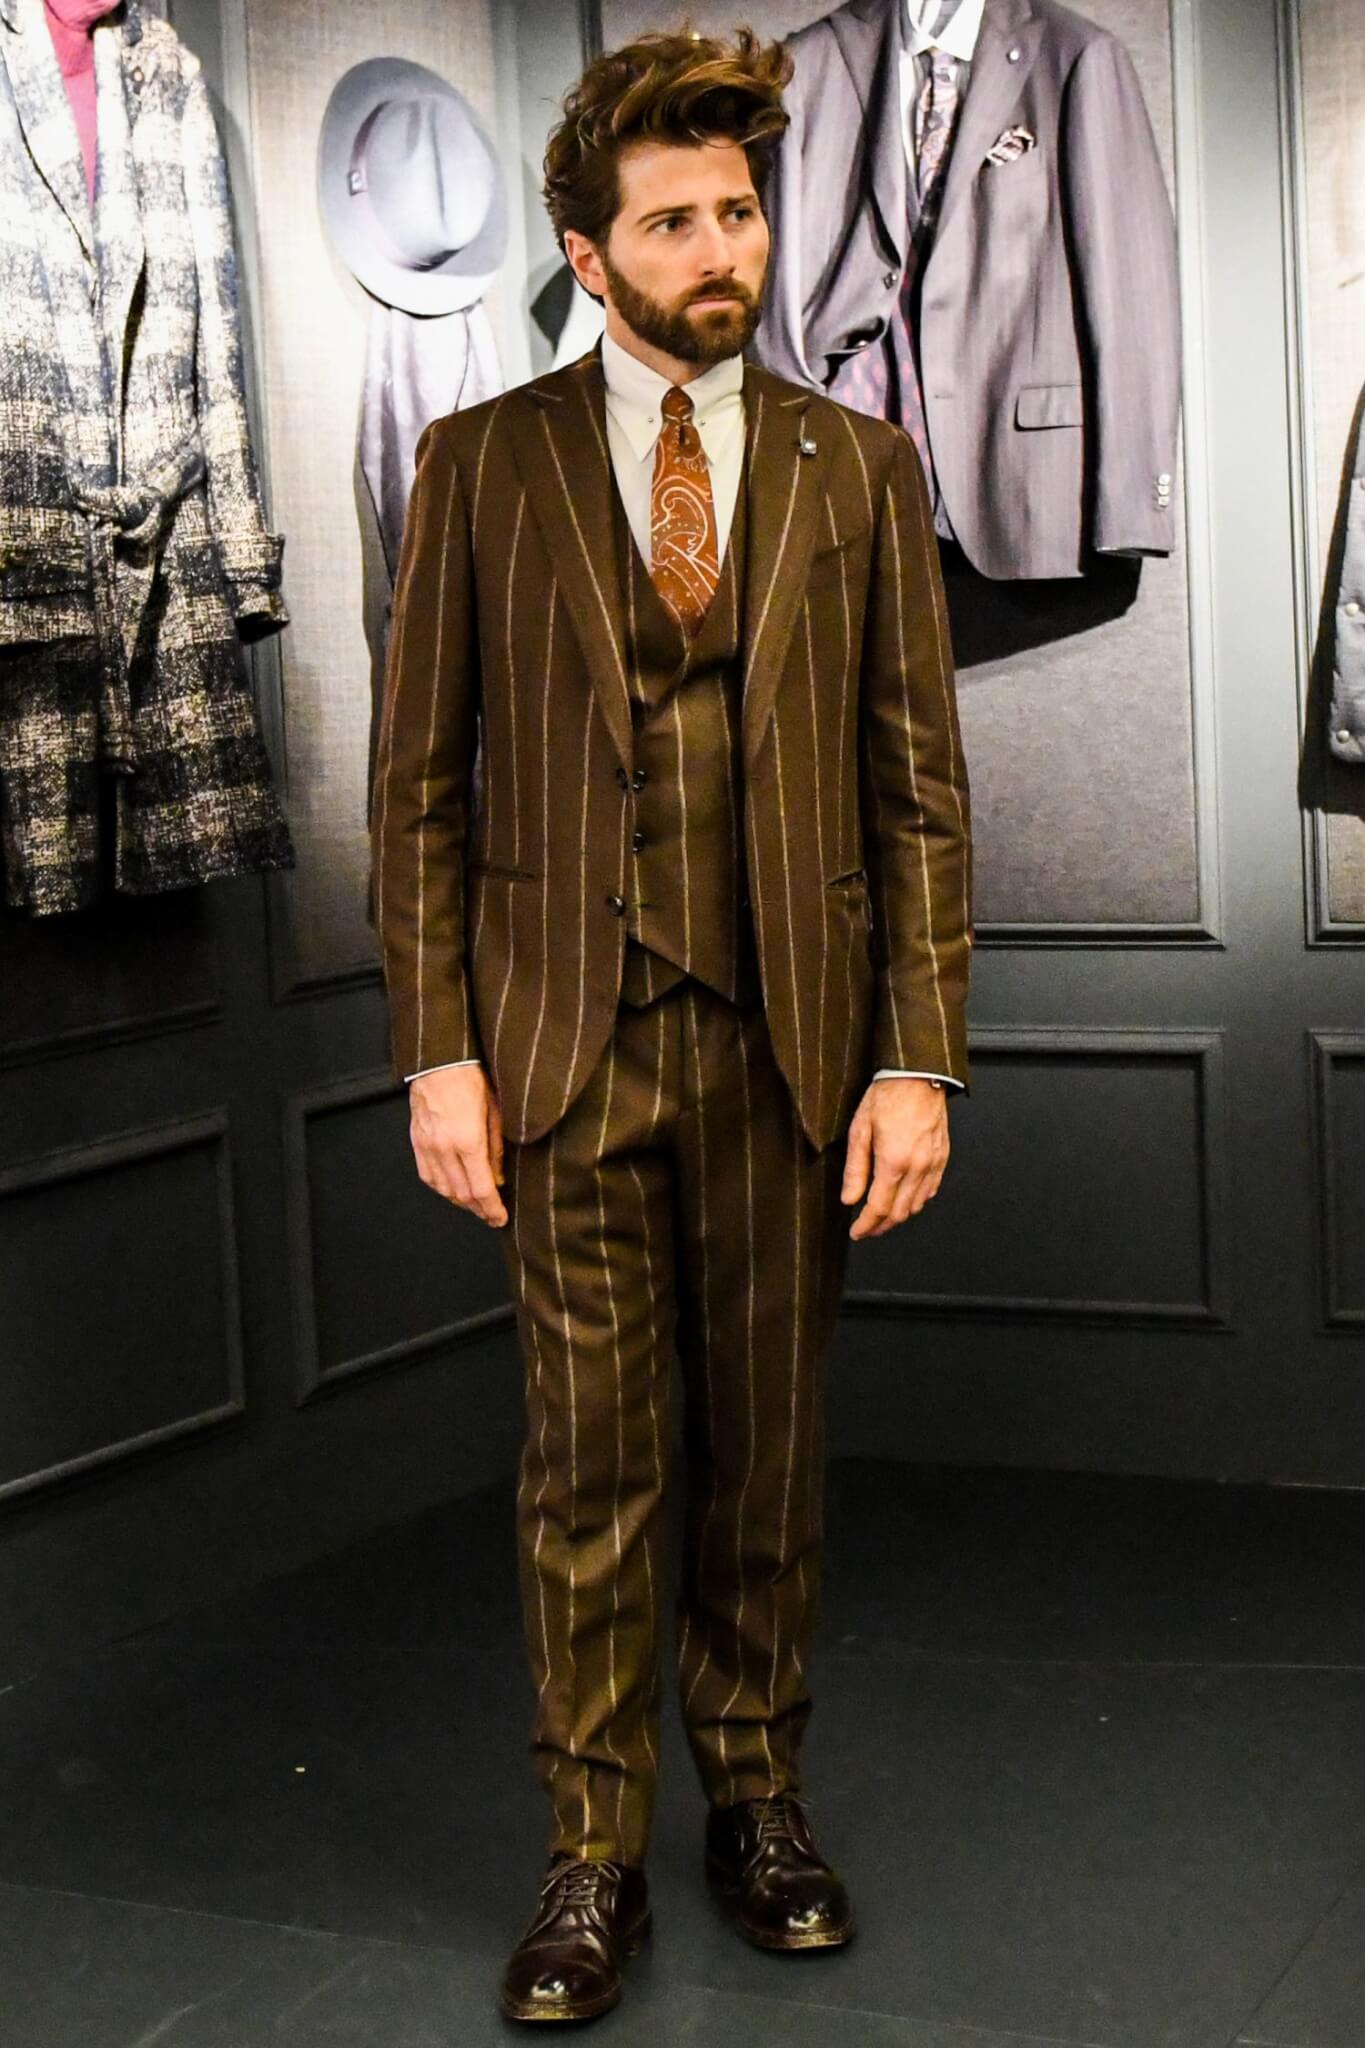 カラーピンでネクタイに立体感をプラス こなれたvゾーンを構築する有効な手段 メンズファッションメディア Otokomae 男前研究所